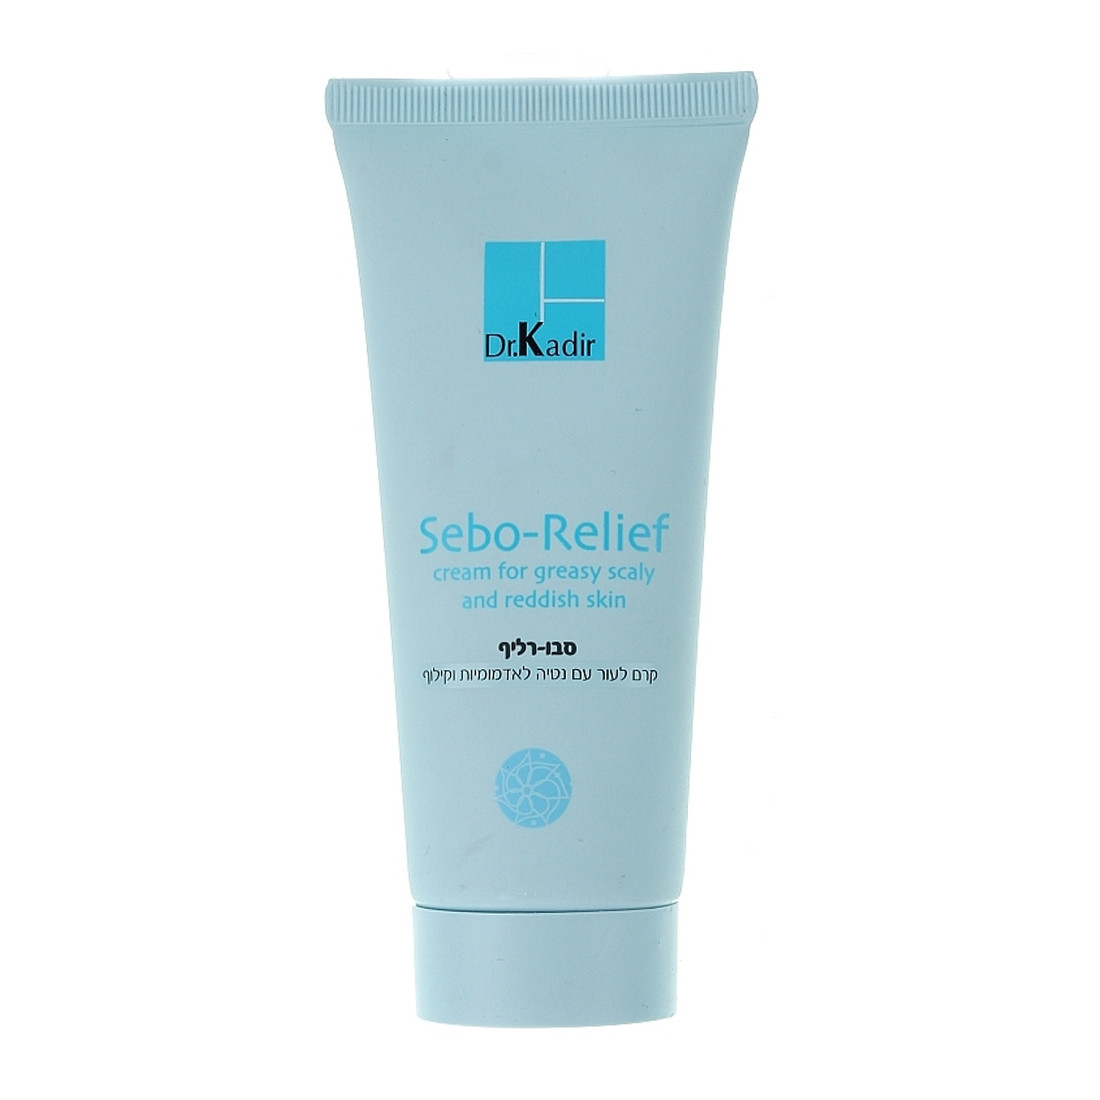 Себорельєф крем Dr. Kadir Sebo-Relief Cream